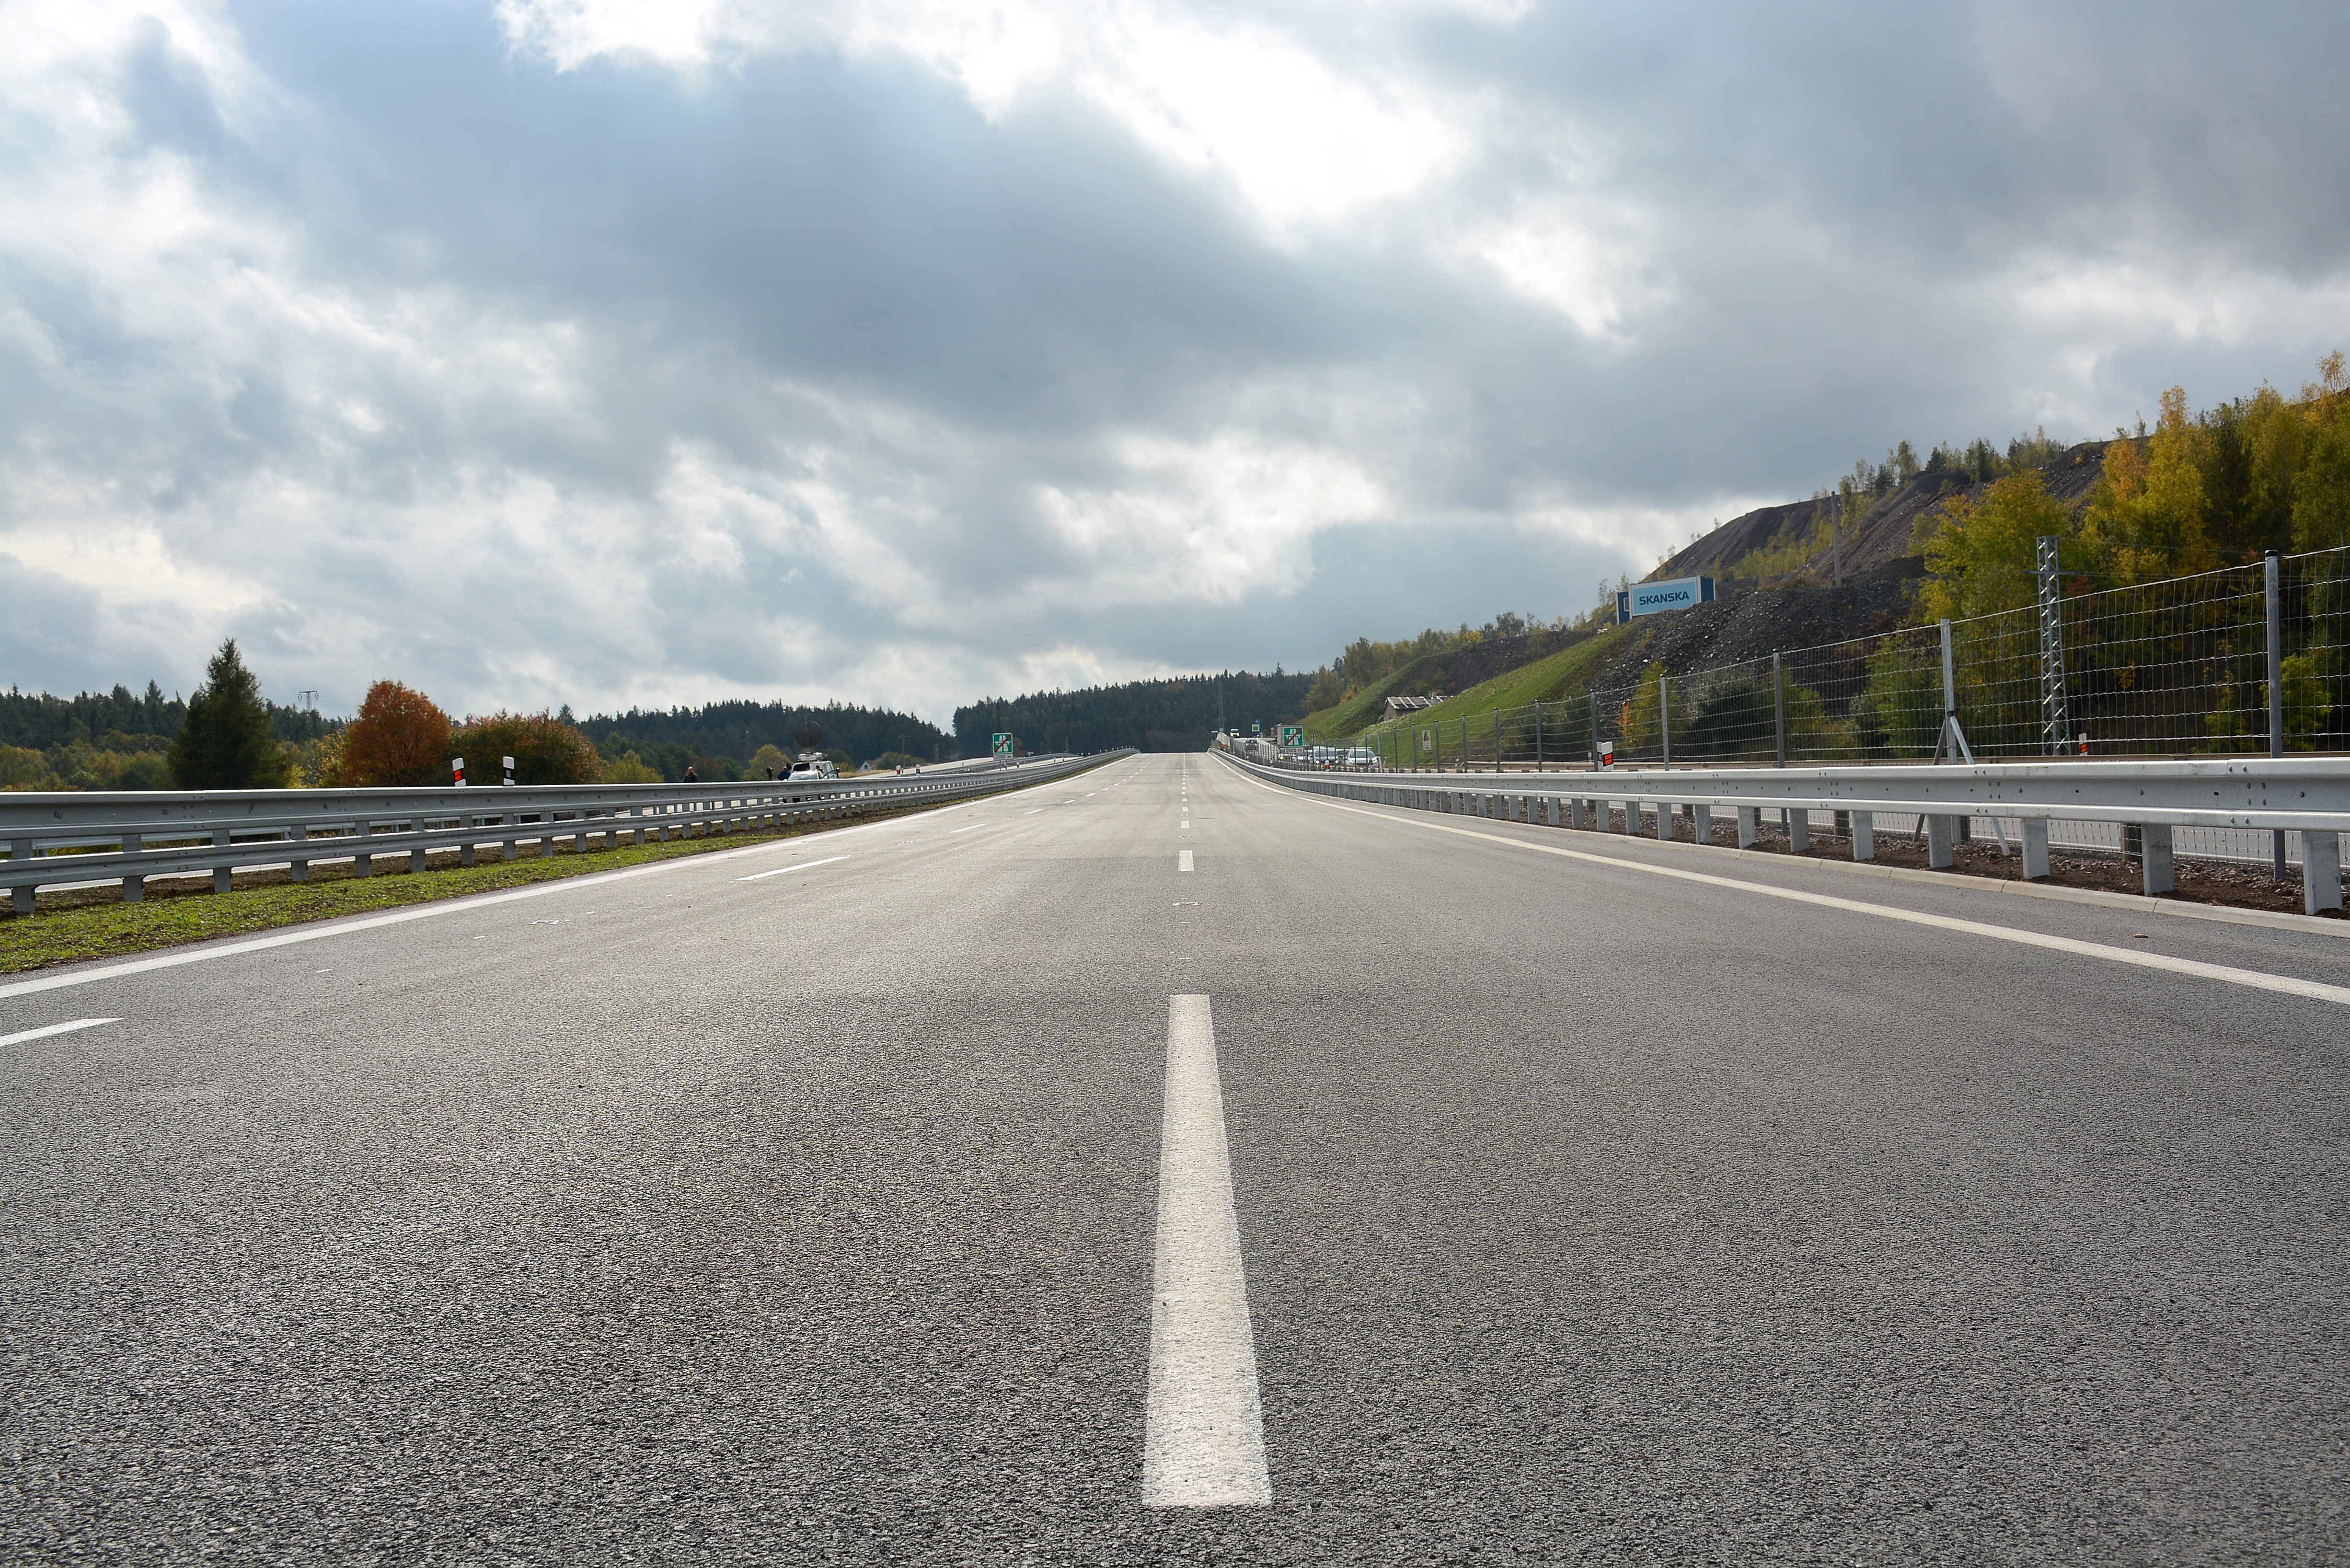 Renomovaná ročenka ocenila PPP projekt dálnice D4 jako nejlepší v Evropě